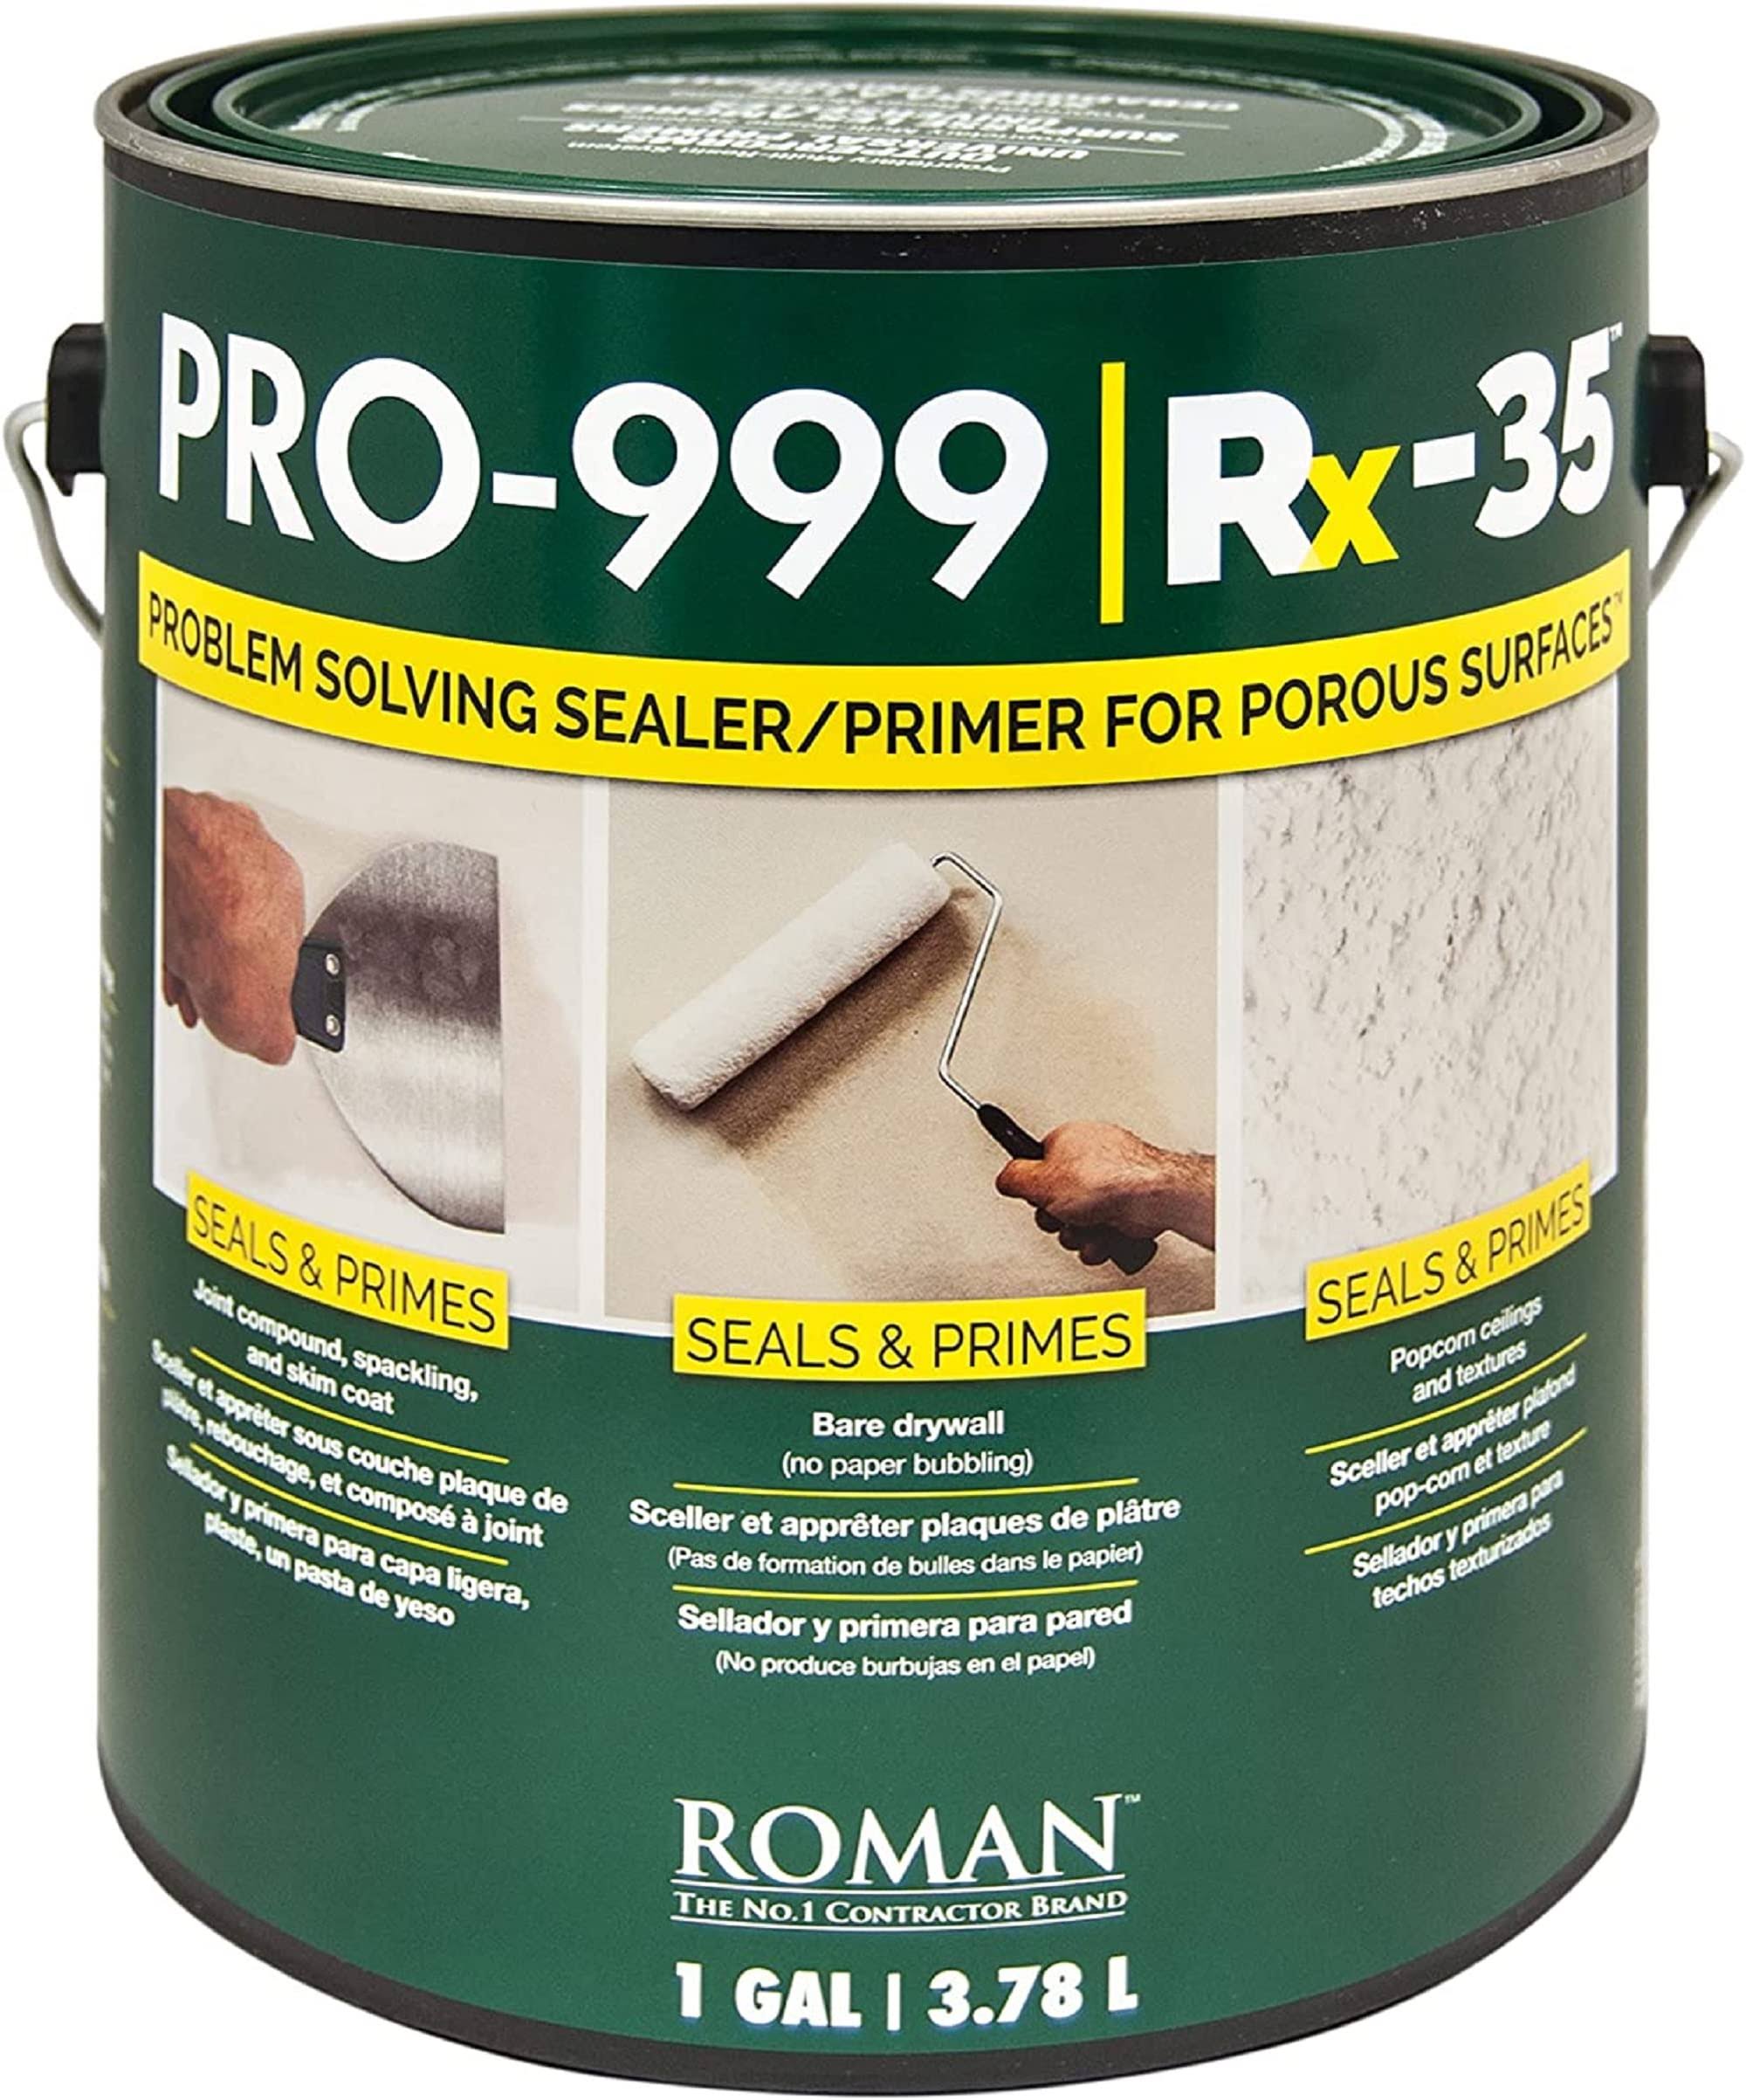 Roman Adhesives Rx35 Dryall Repair & Prime - 1 Gal